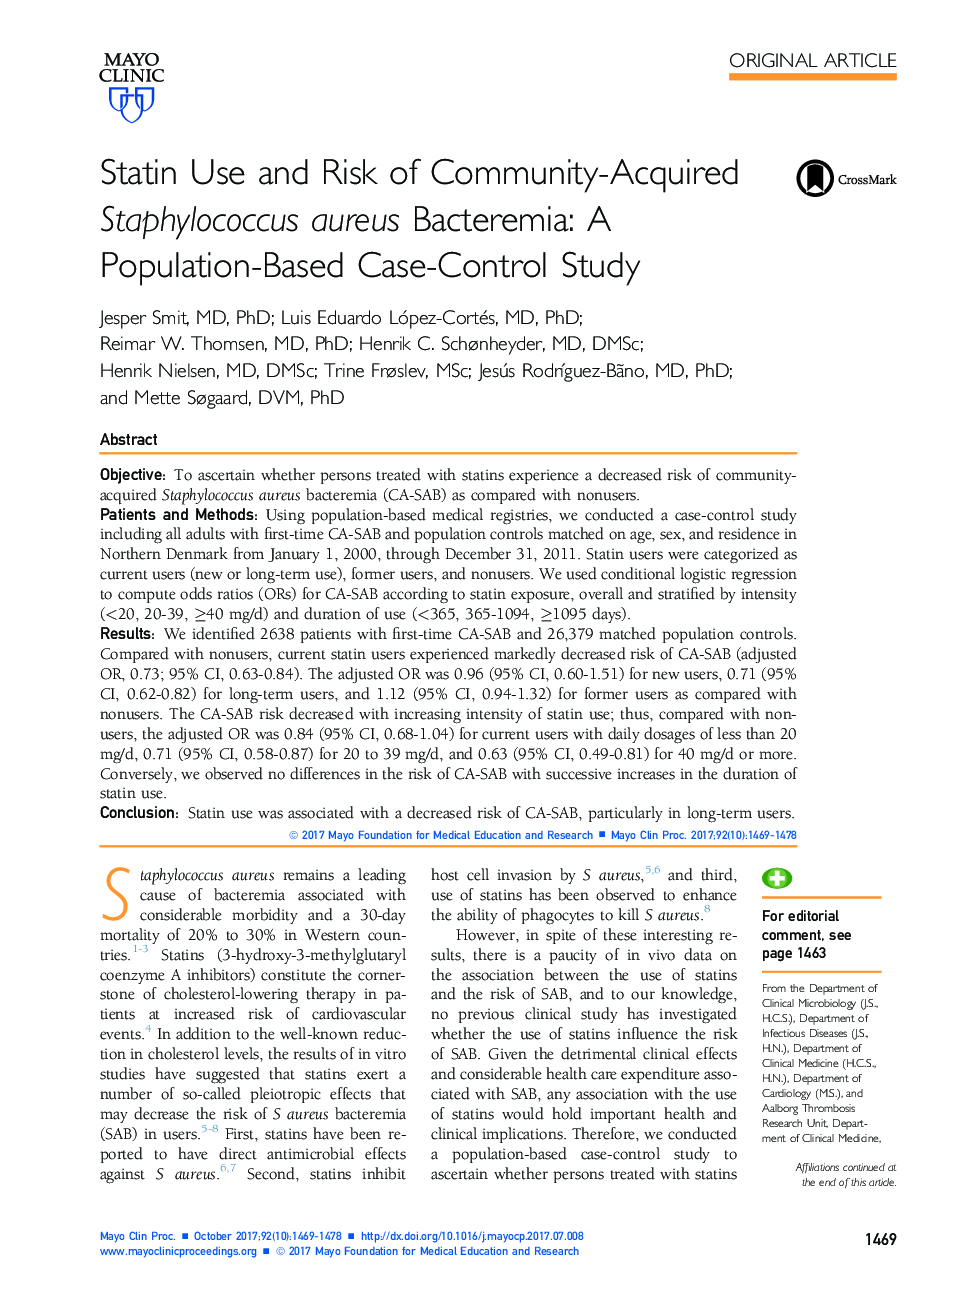 استفاده از استاتین و خطر ابتلا به استافیلوکوک اورئوس باکتریایی در جامعه: یک مطالعه مورد شاهدی مبتنی بر جمعیت 